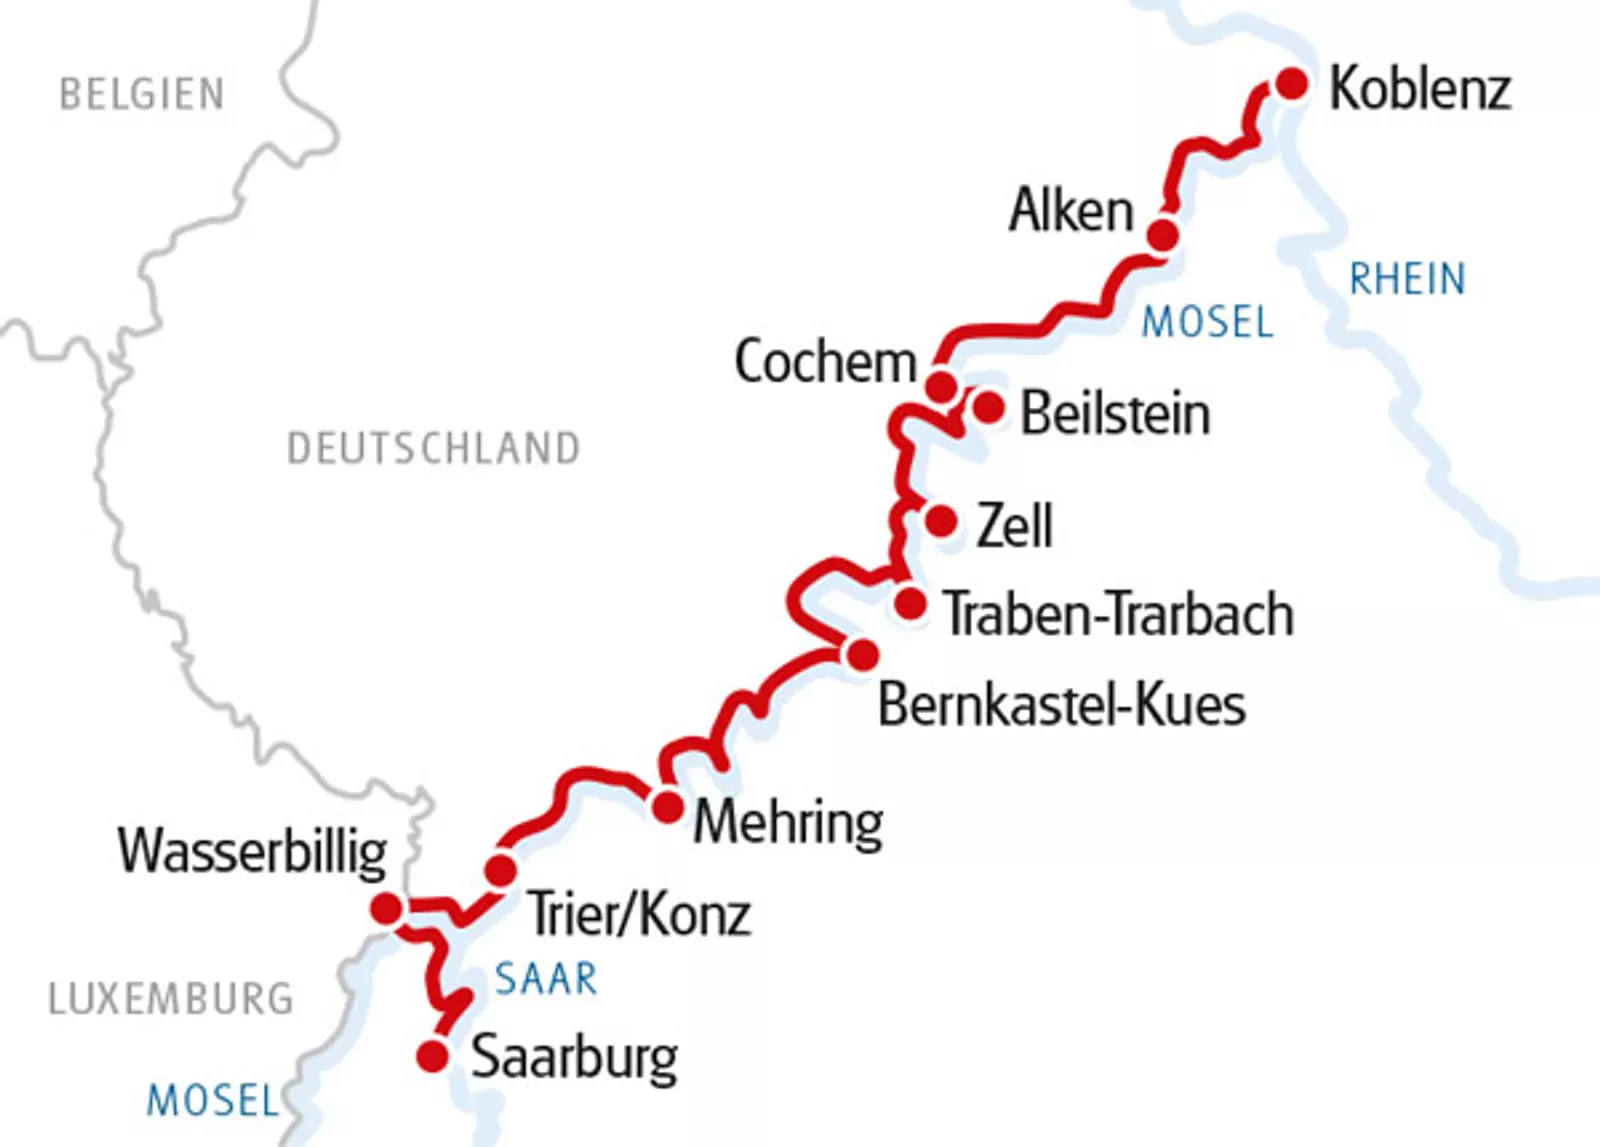 Vaarroute Koblenz naar Saarburg